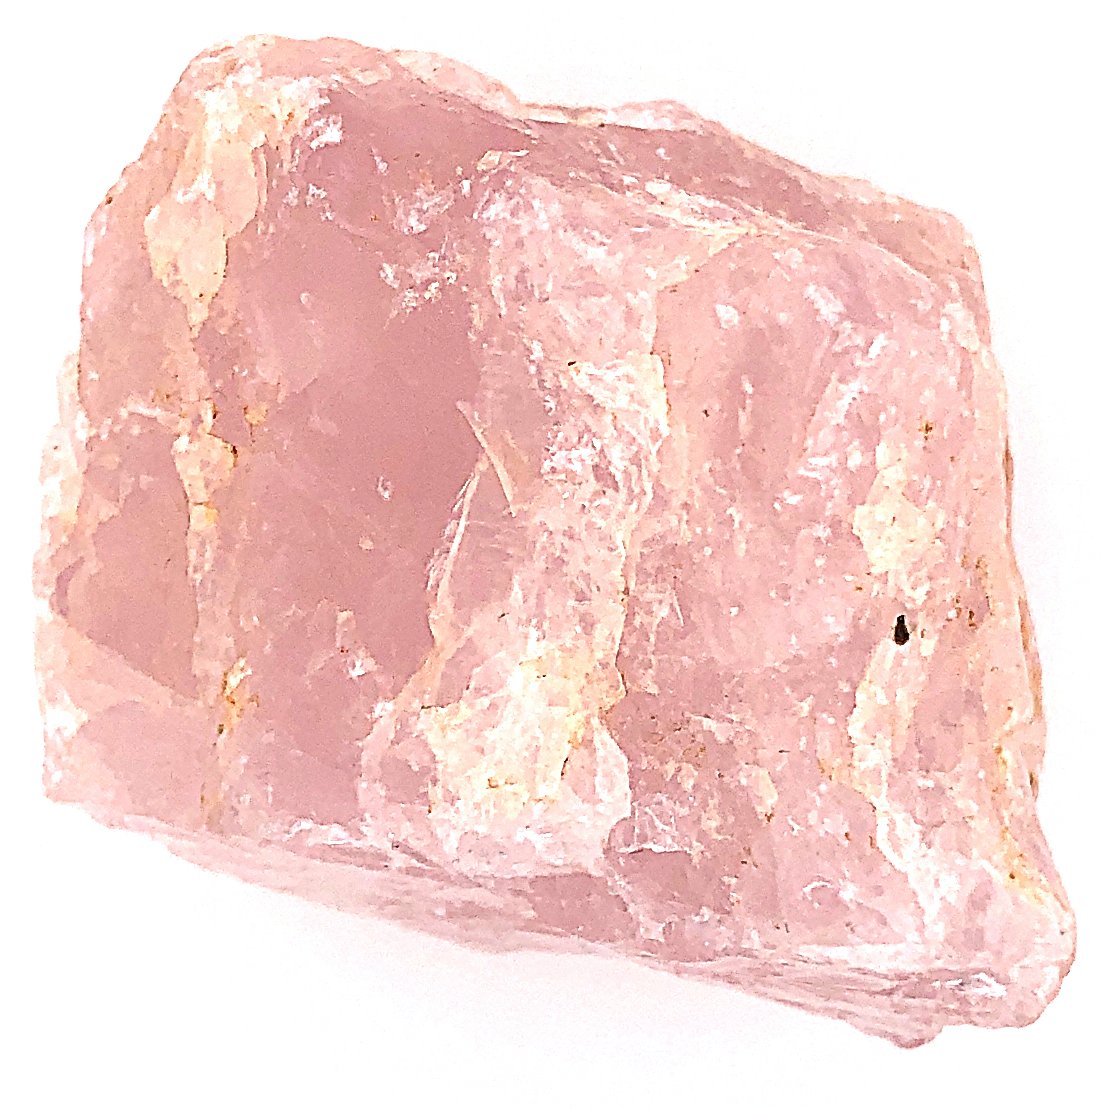 material: rose quartz